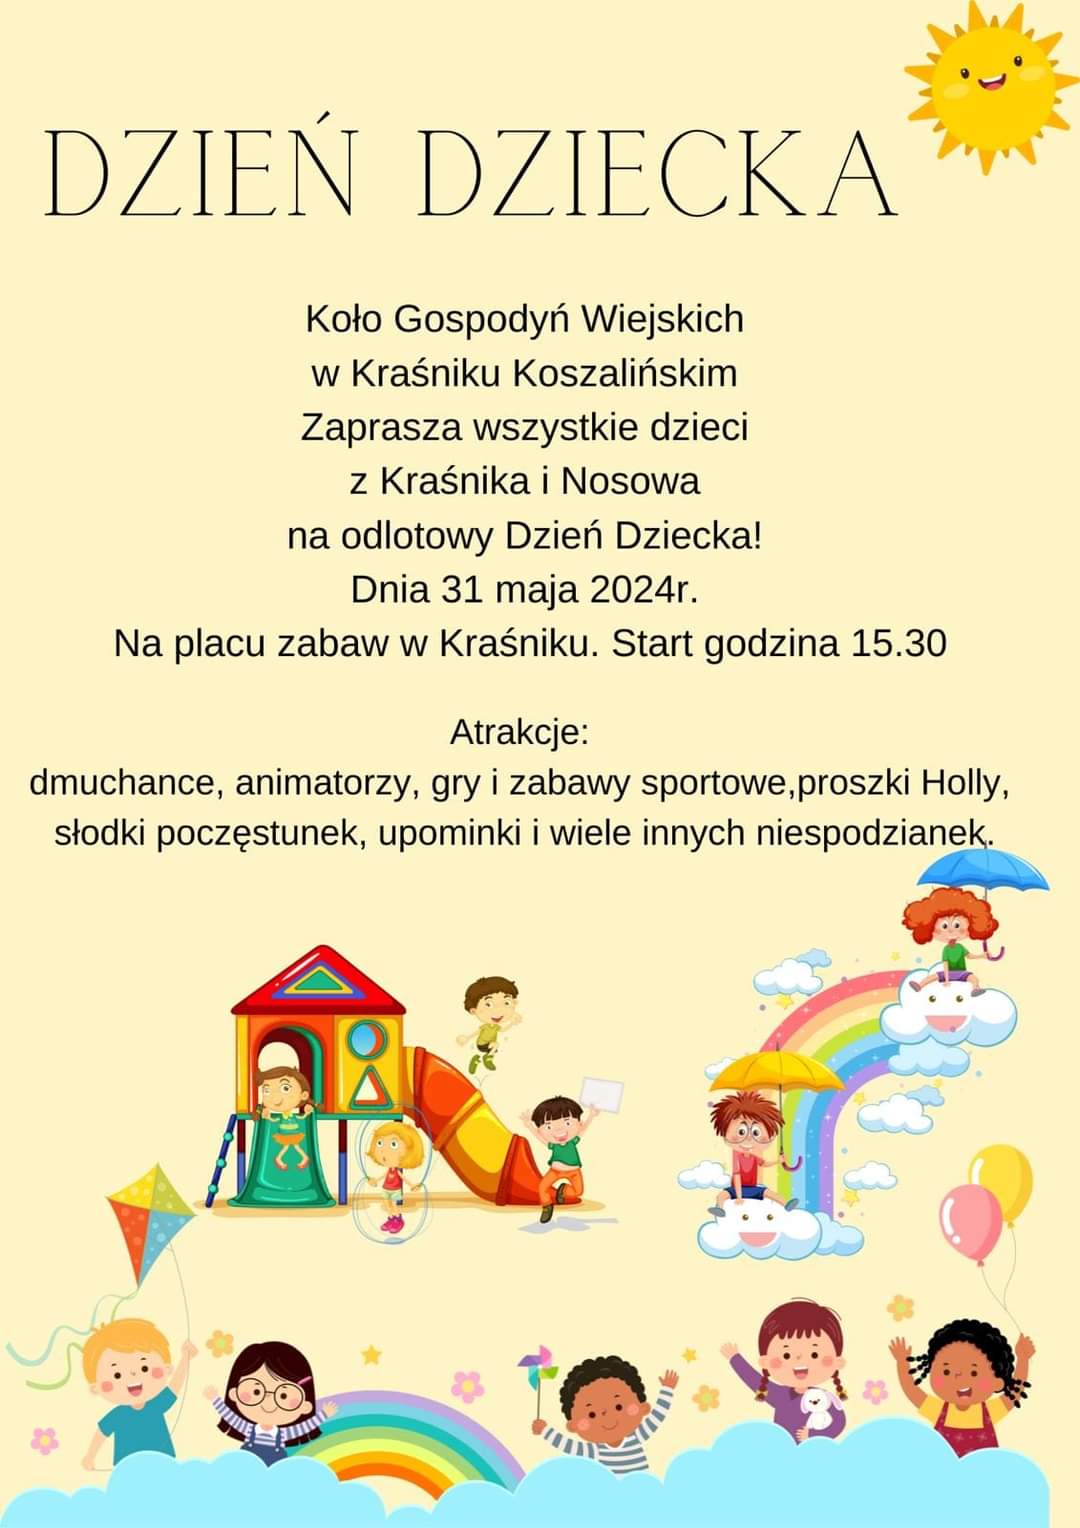 Plakat z zaproszeniem na Dzień Dziecka w Kraśniku Koszalińskim 31 maja 2024